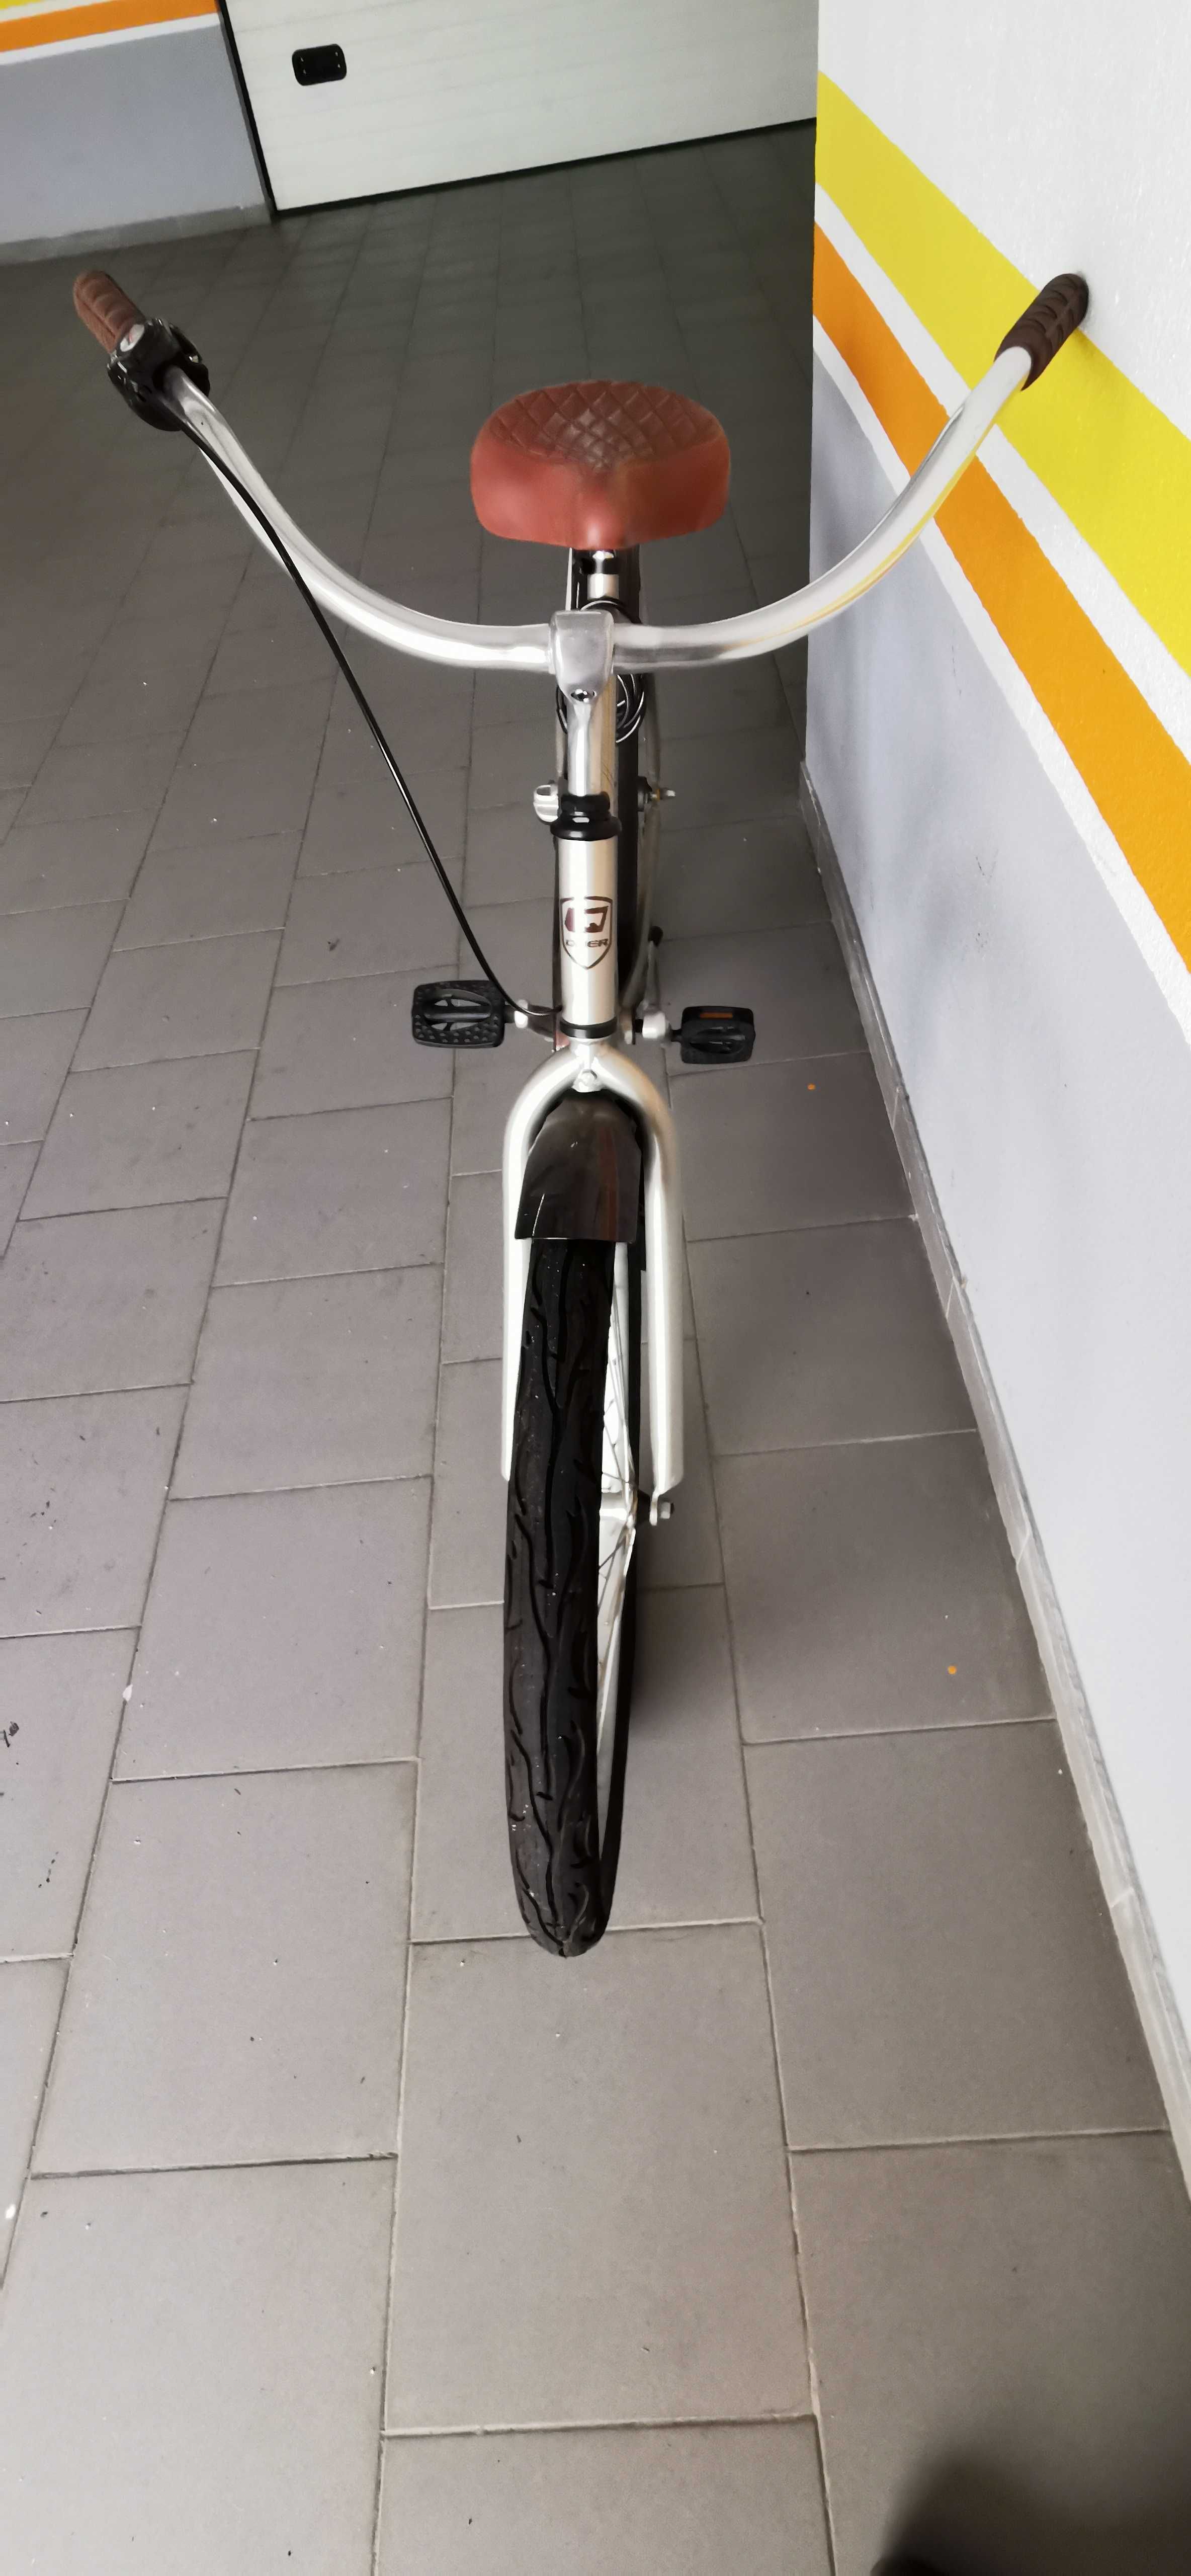 Bicicleta "Quer", quadro alumínio, como nova (custa nova 405 euros)